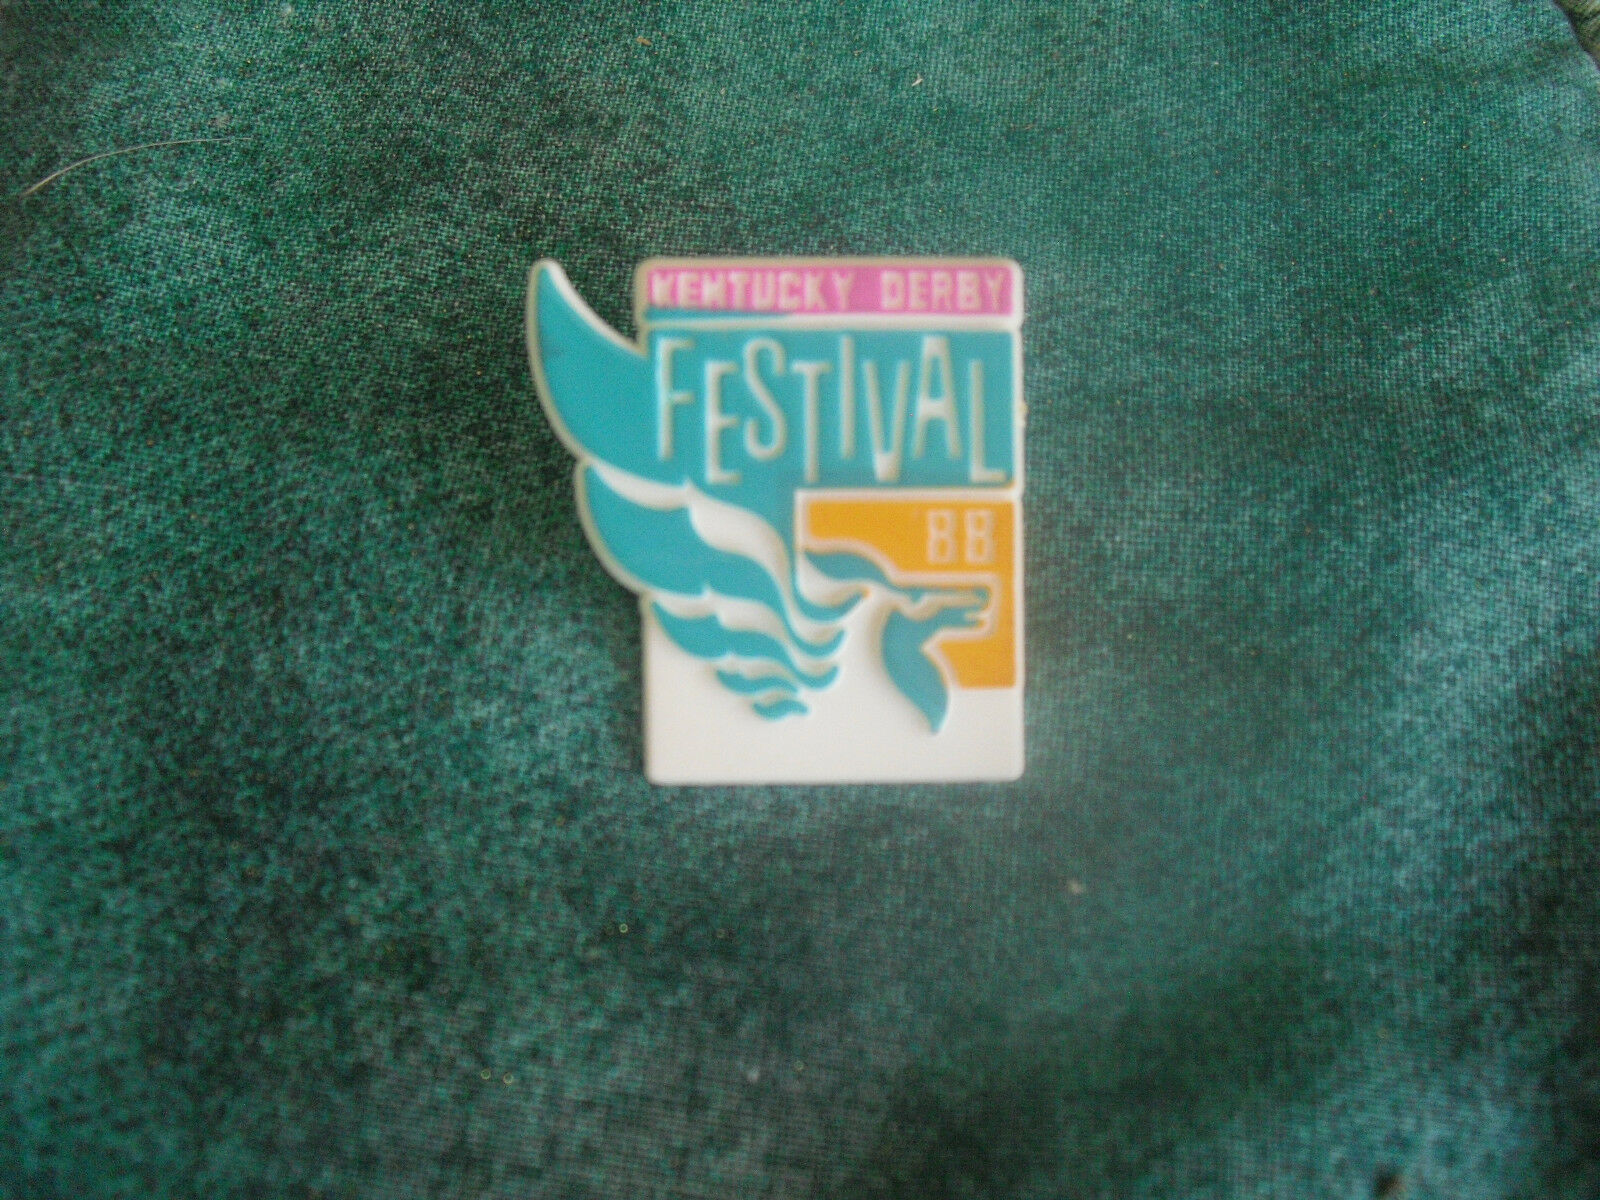 1988 Kentucky Derby Festival Pin